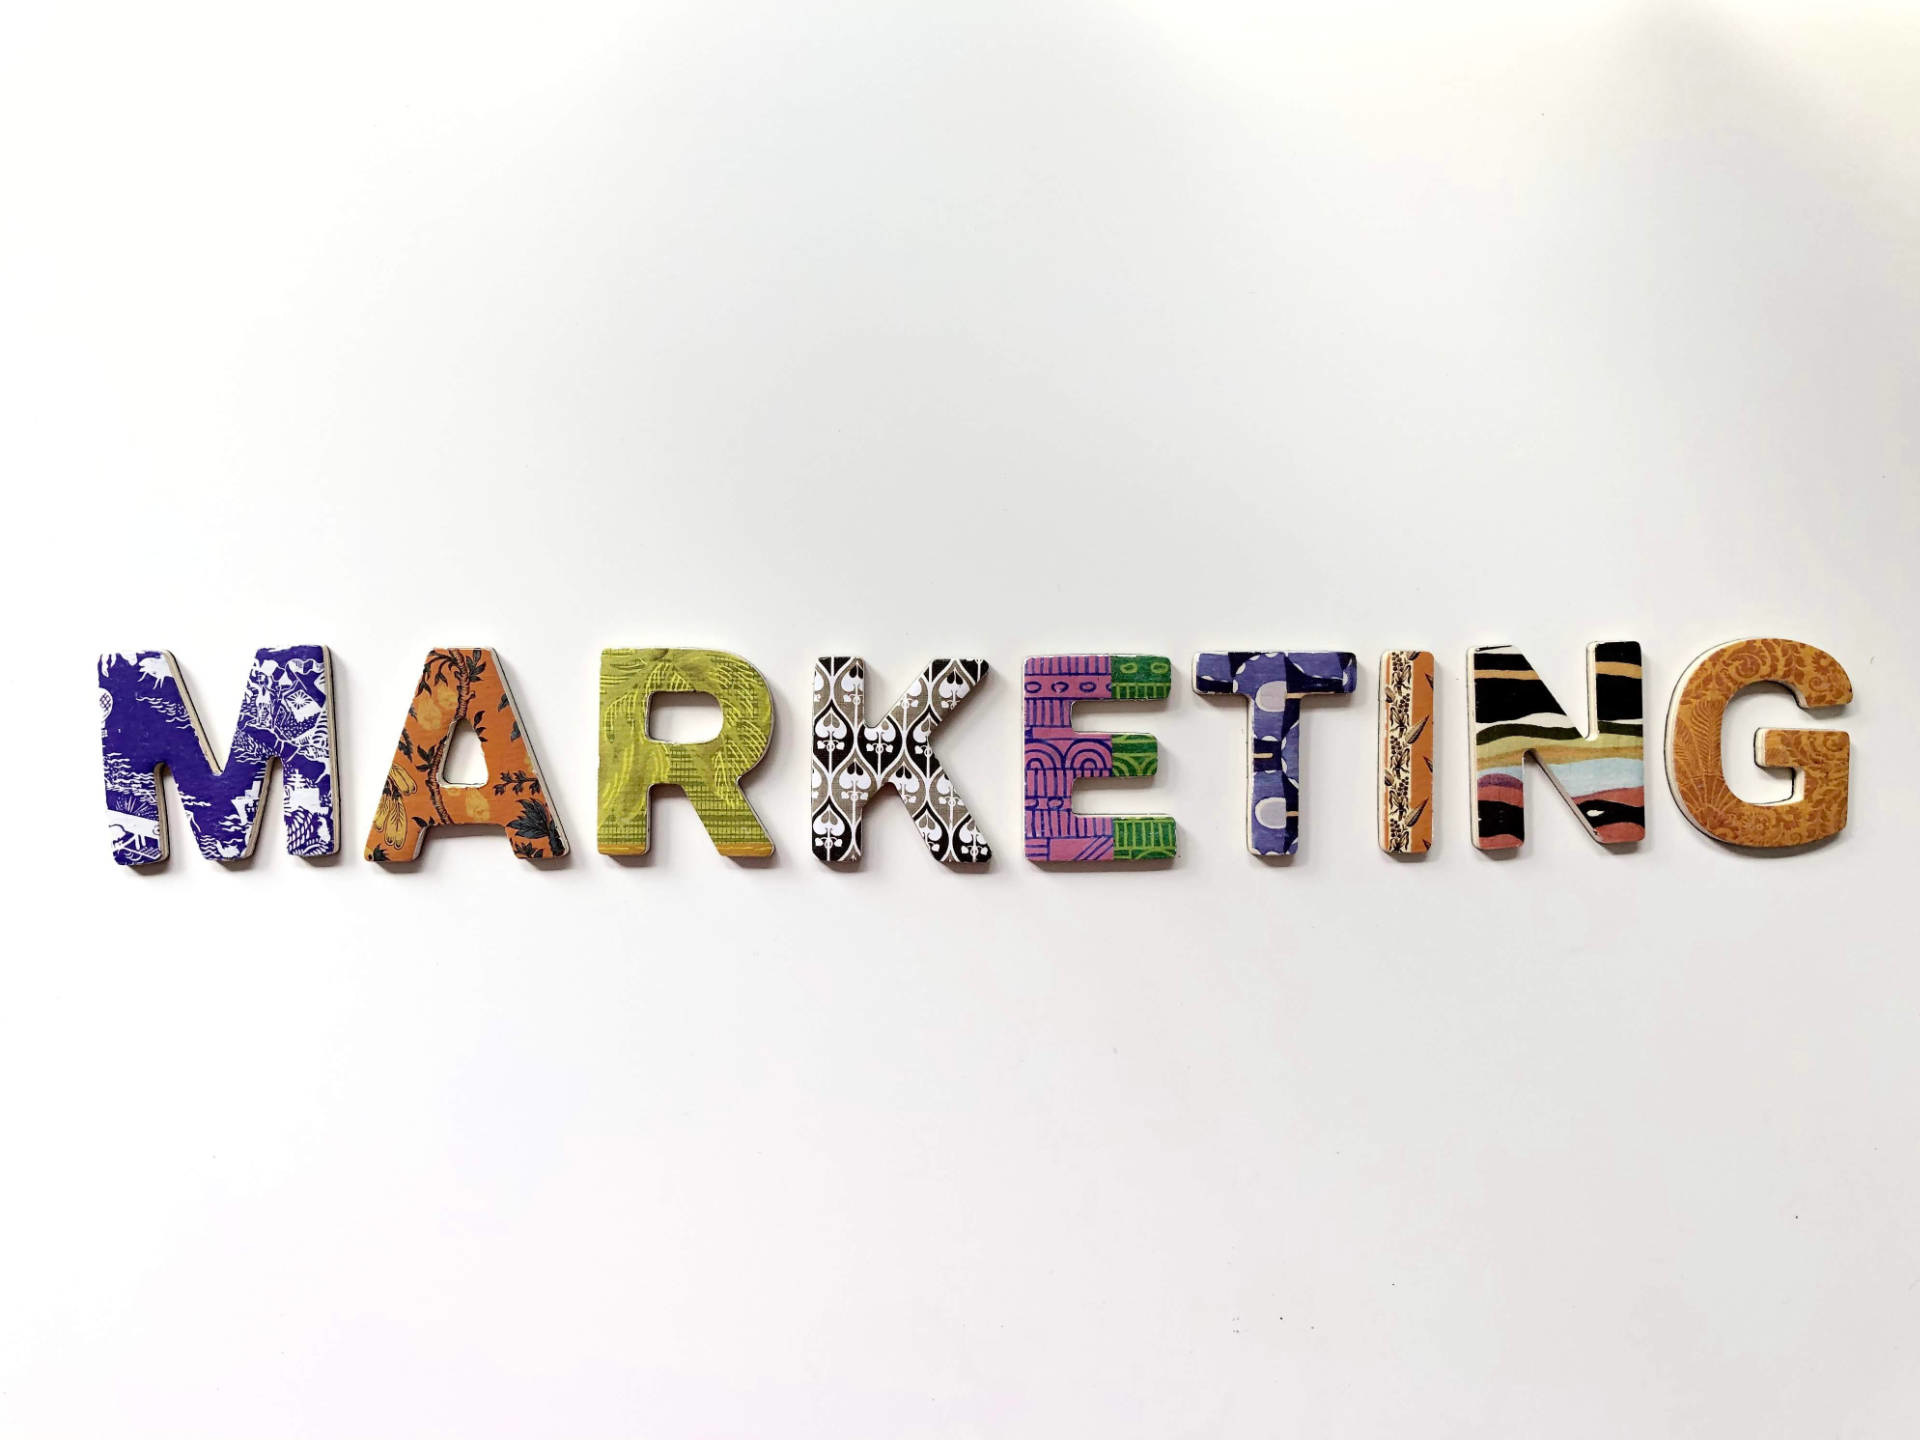 Digitalni marketing ima vse večjo vlogo pri celostni marketinški strategiji